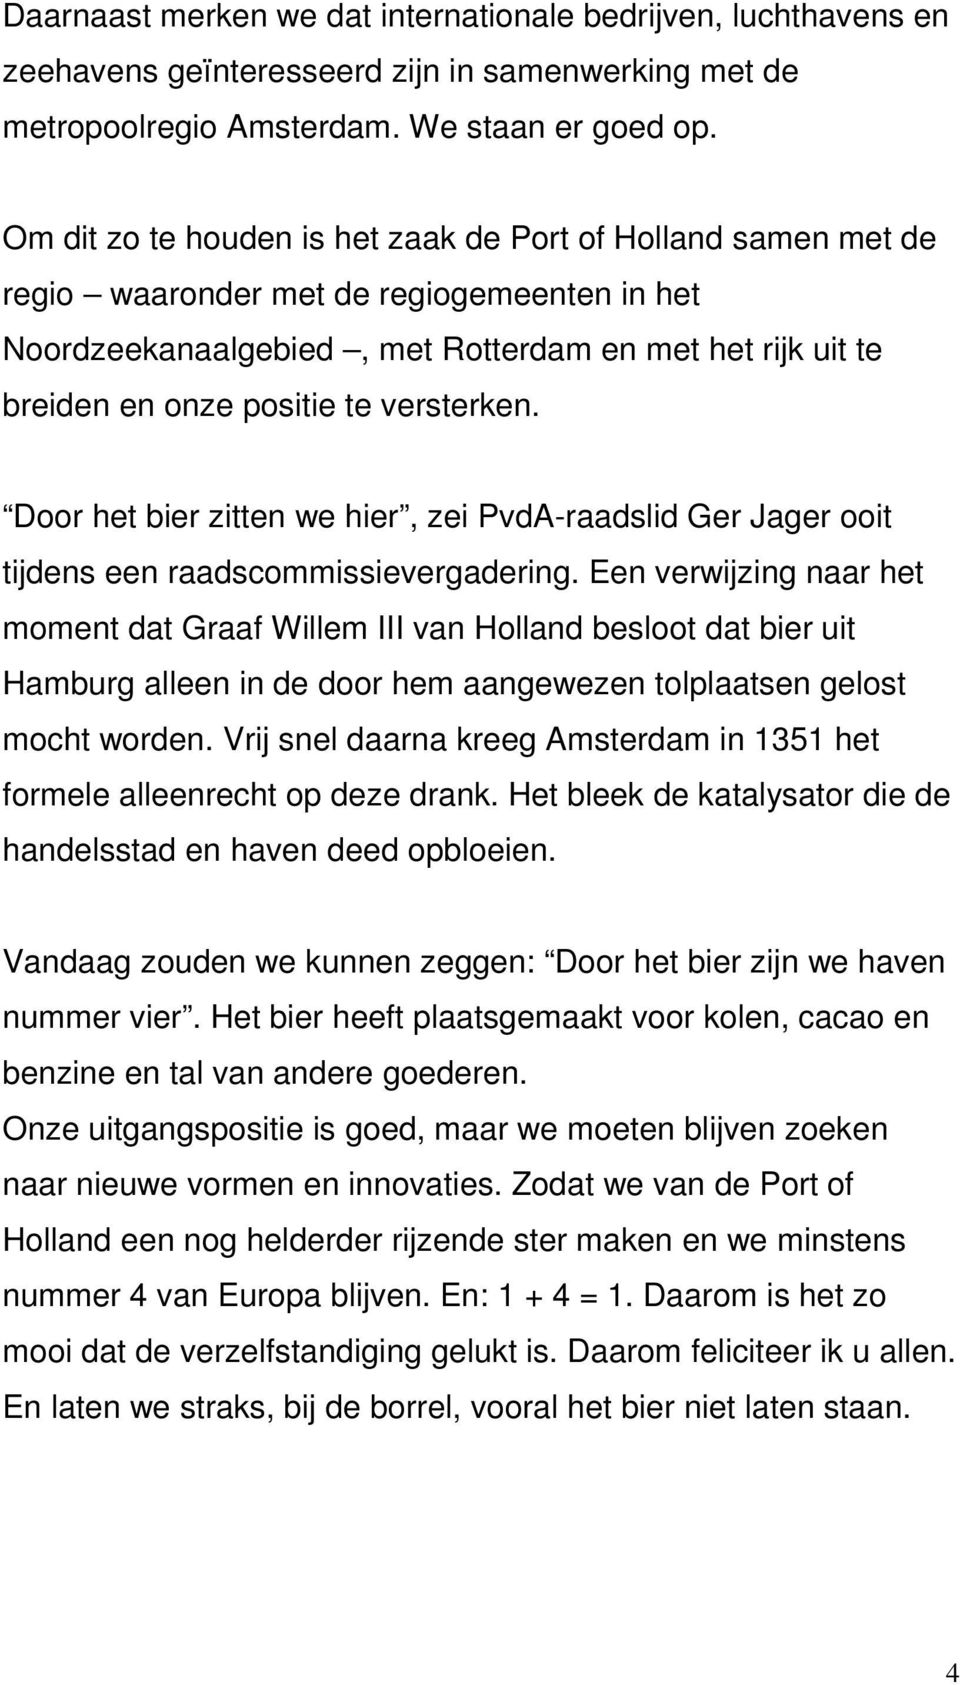 versterken. Door het bier zitten we hier, zei PvdA-raadslid Ger Jager ooit tijdens een raadscommissievergadering.